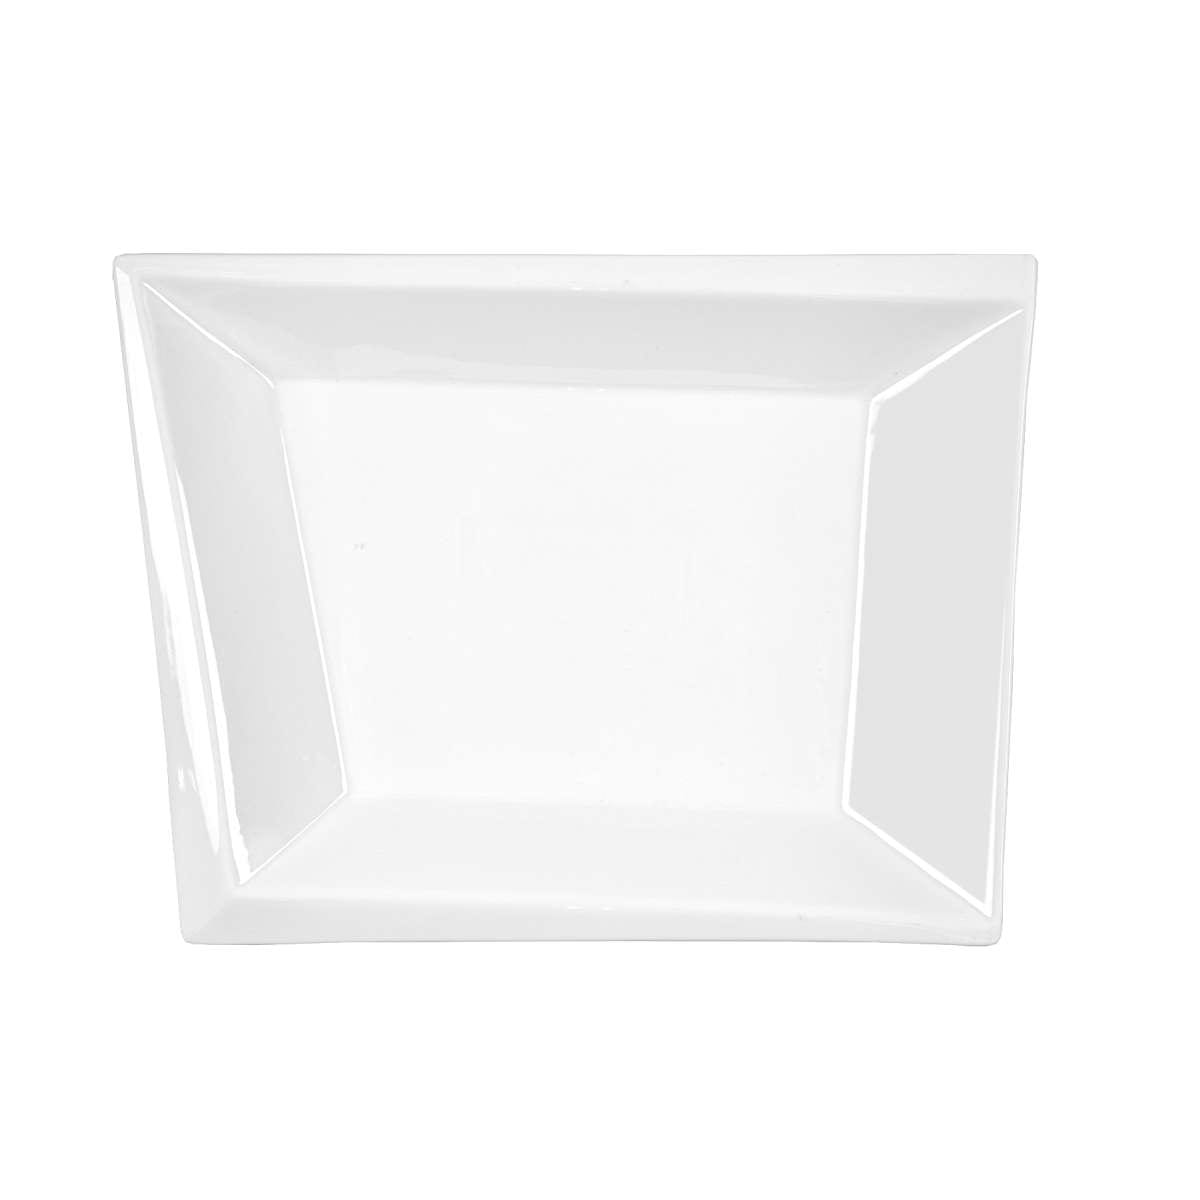 Πιατέλα Πορσελάνης Τετράγωνη Λευκή Art Et Lumiere 32x27x3,5εκ. 05982 (Υλικό: Πορσελάνη, Χρώμα: Λευκό) - Art Et Lumiere - lumiere_05982 138415